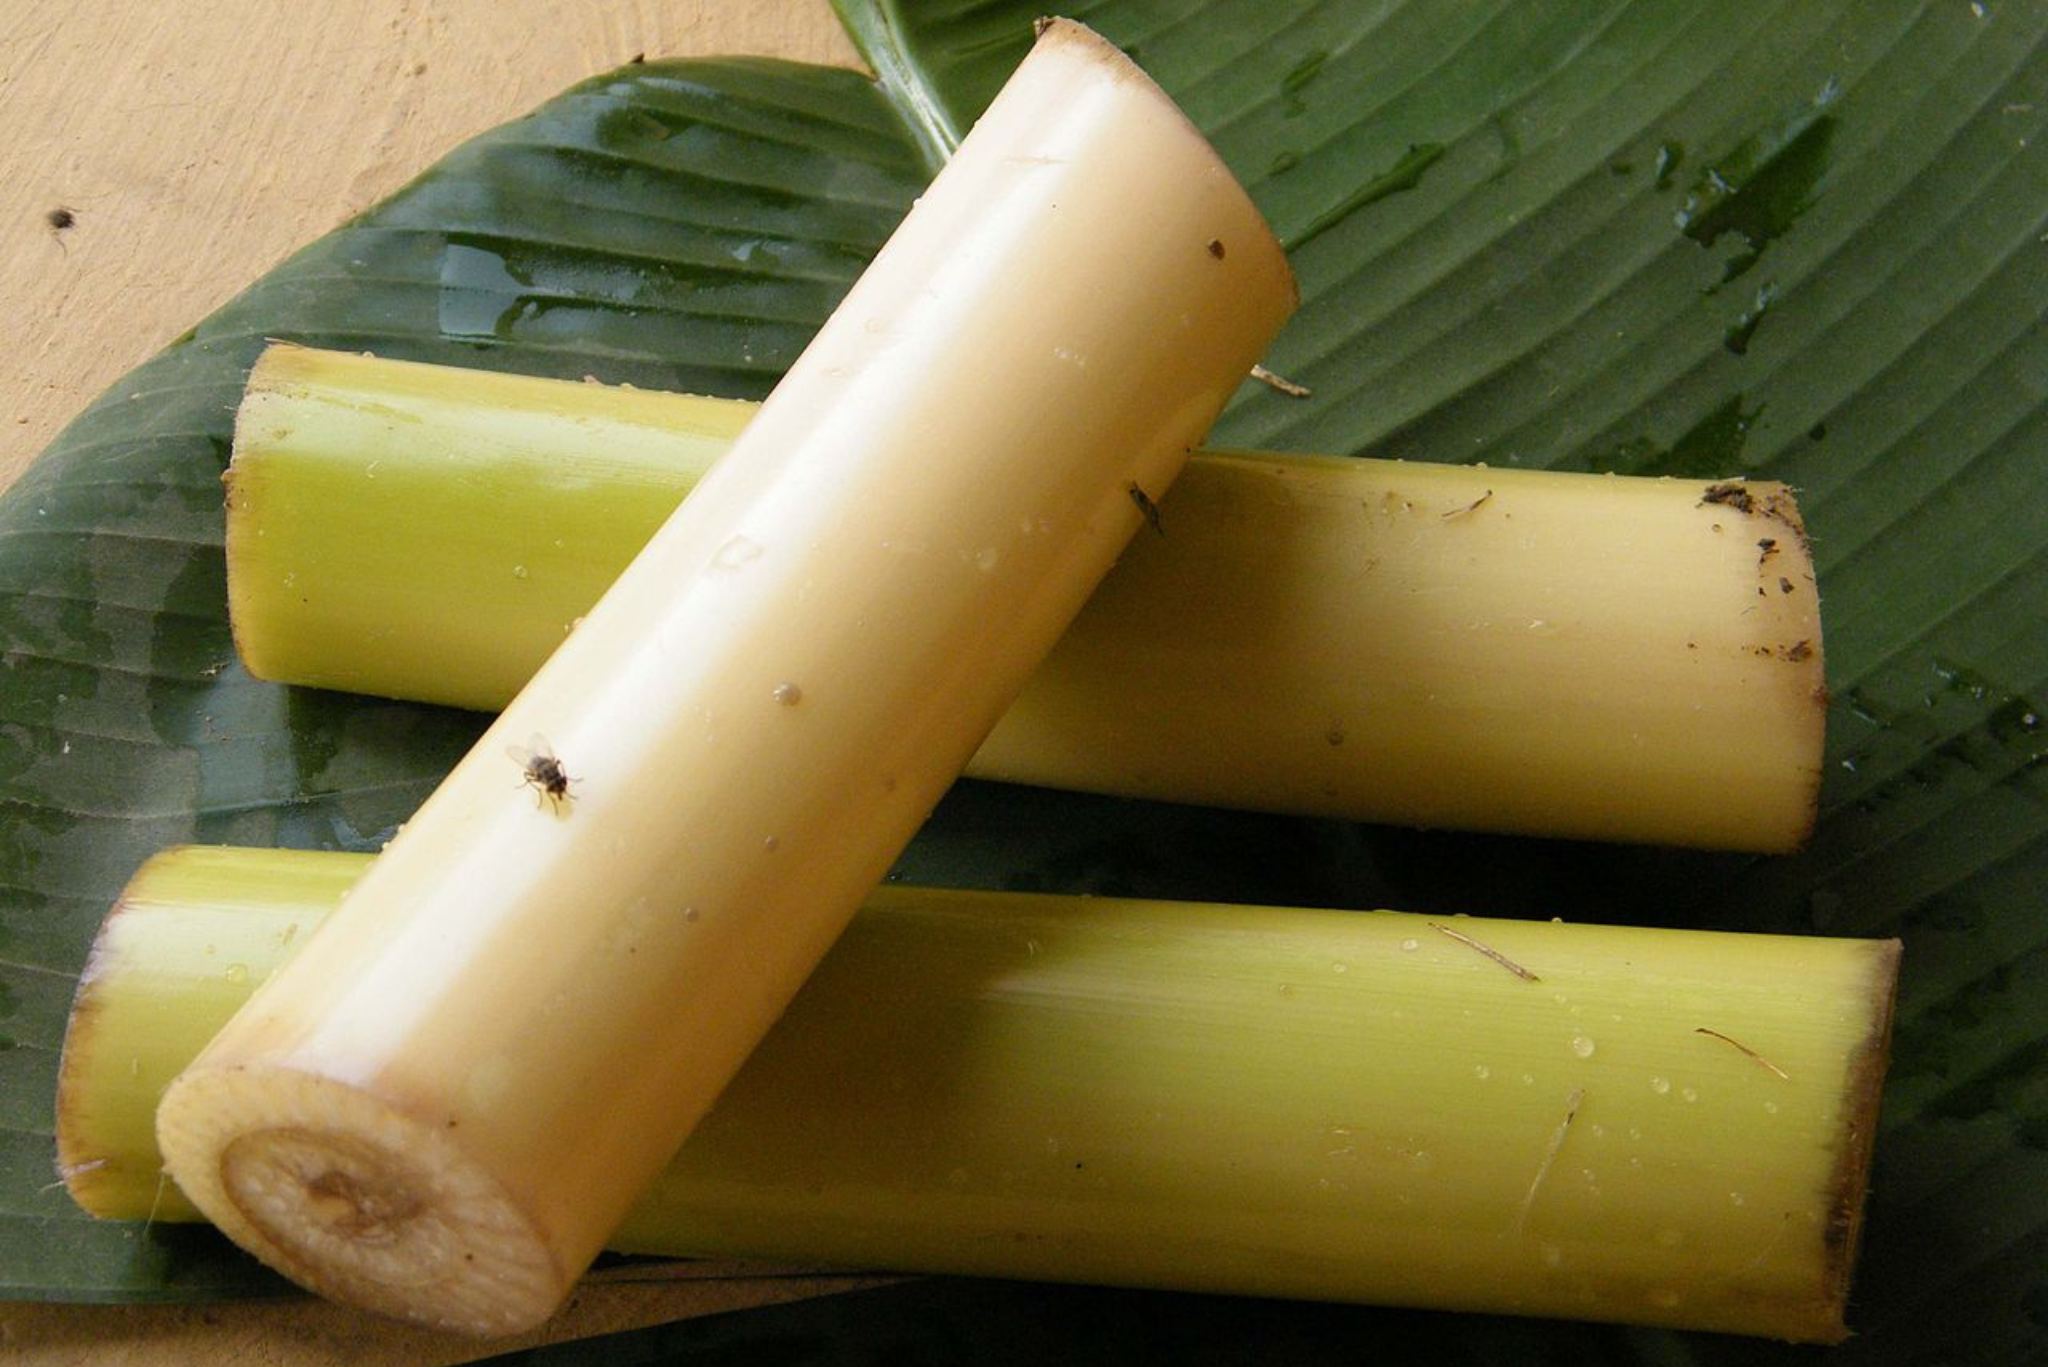 Banana stem